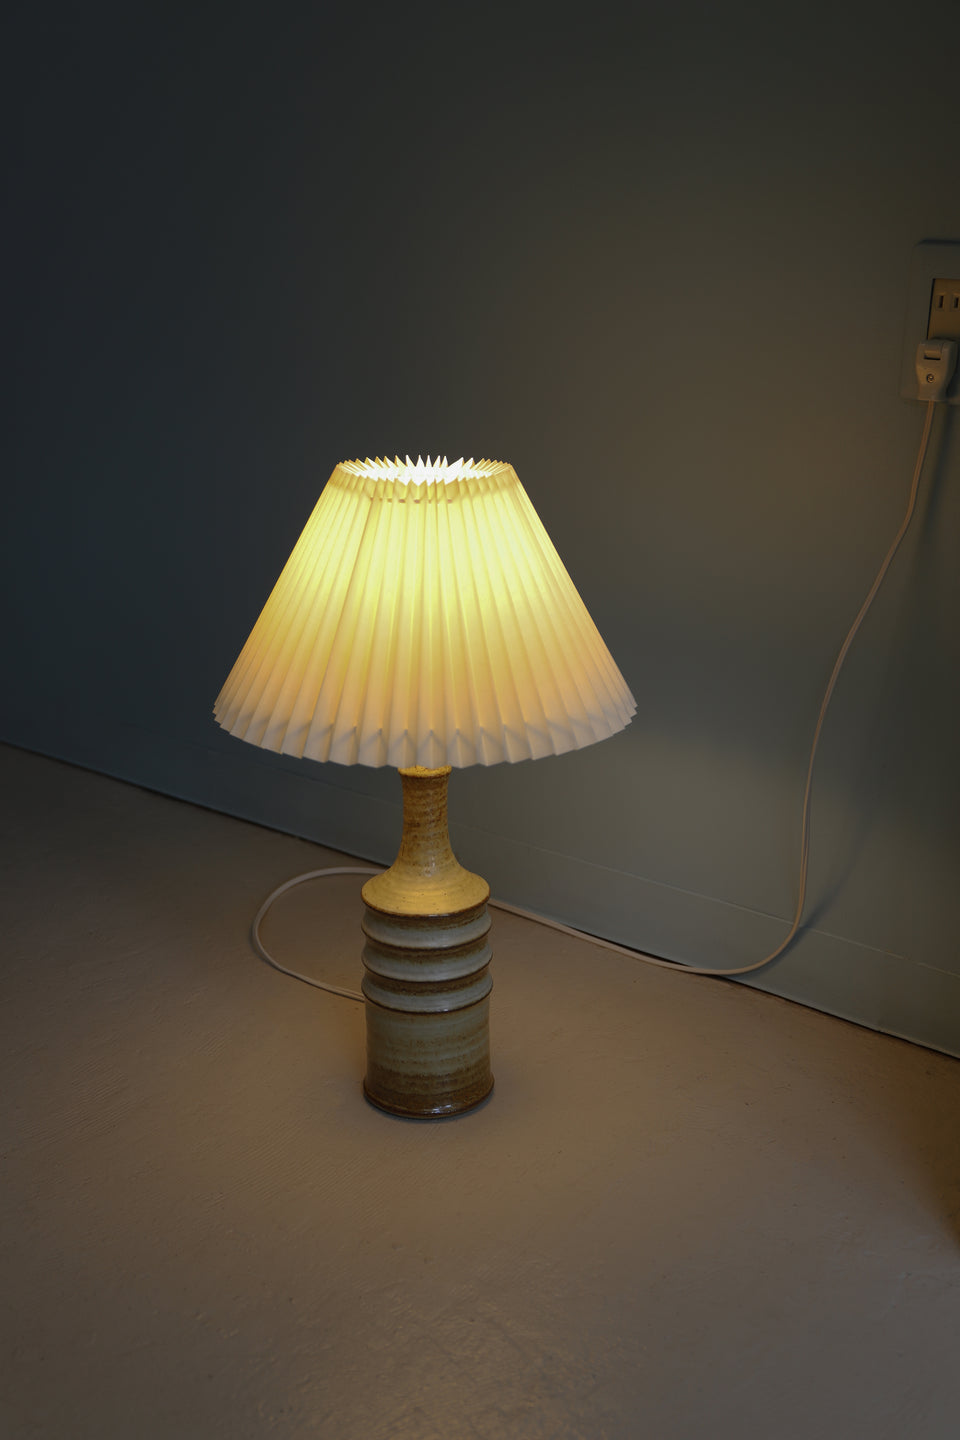 Danish Vintage Søholm Table Lamp Joseph Simon/デンマークヴィンテージ スーホルム テーブルランプ ジョセフ・シモン 間接照明 北欧インテリア